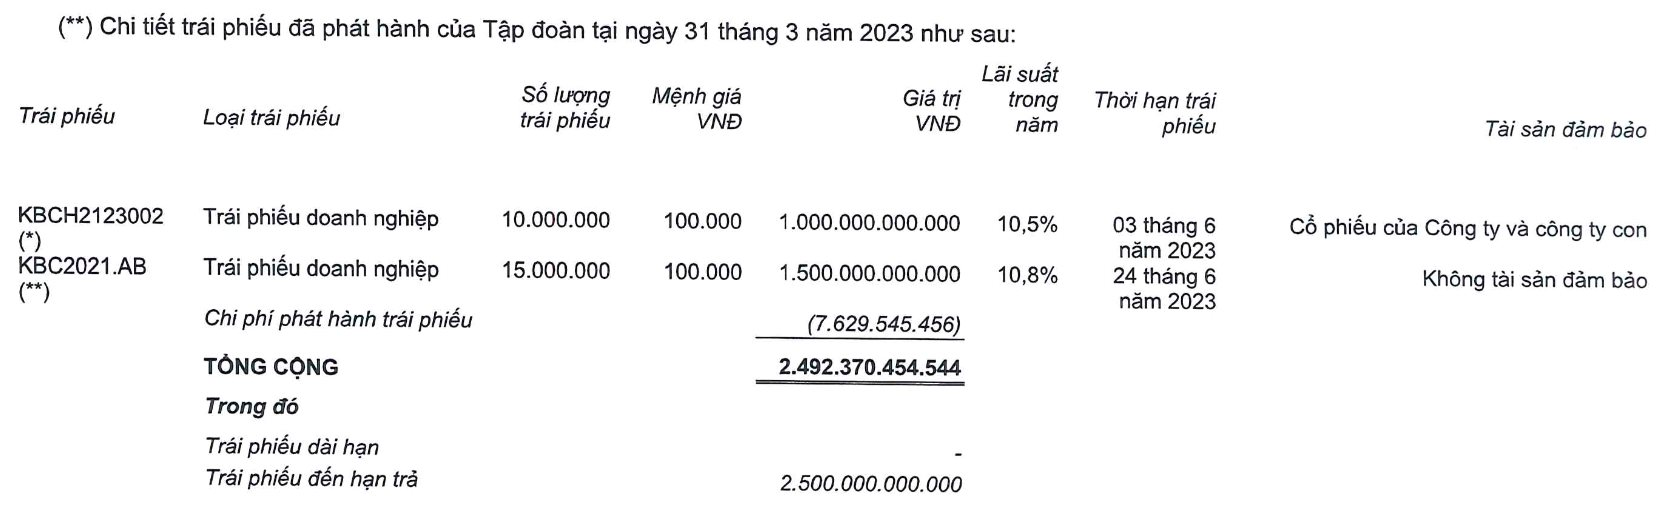 Kinh Bắc (KBC) đặt mục tiêu lãi 4.000 tỷ đồng, ưu tiên trả nợ trái phiếu - Ảnh 2.